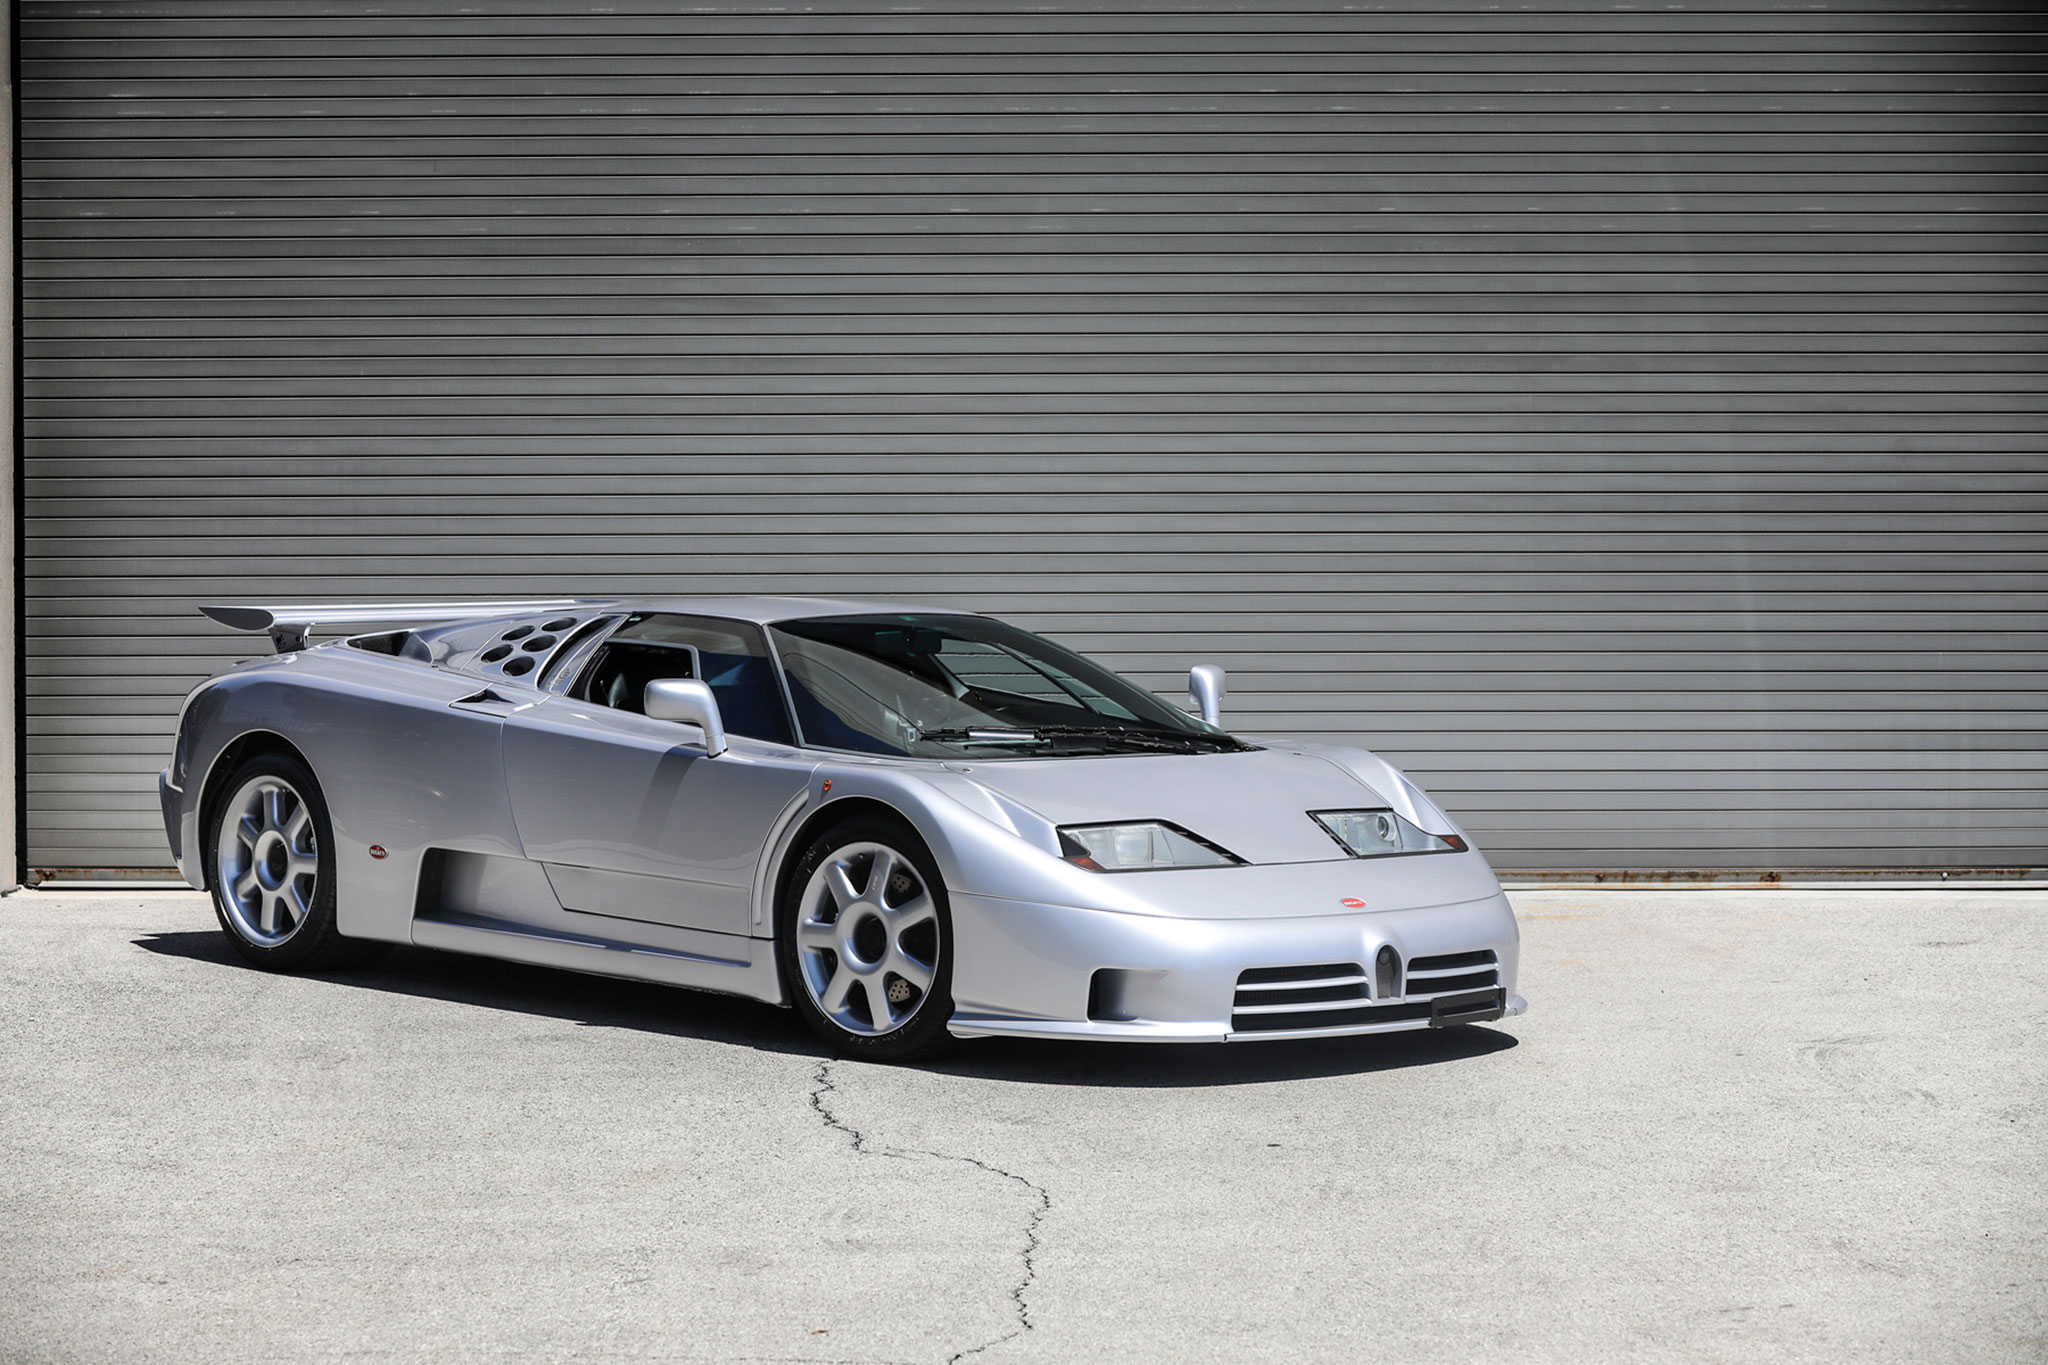 1994 Bugatti EB110 Super Sport - estimation $US 3 à 3.5 millions - Pebble Beach Gooding & Company.